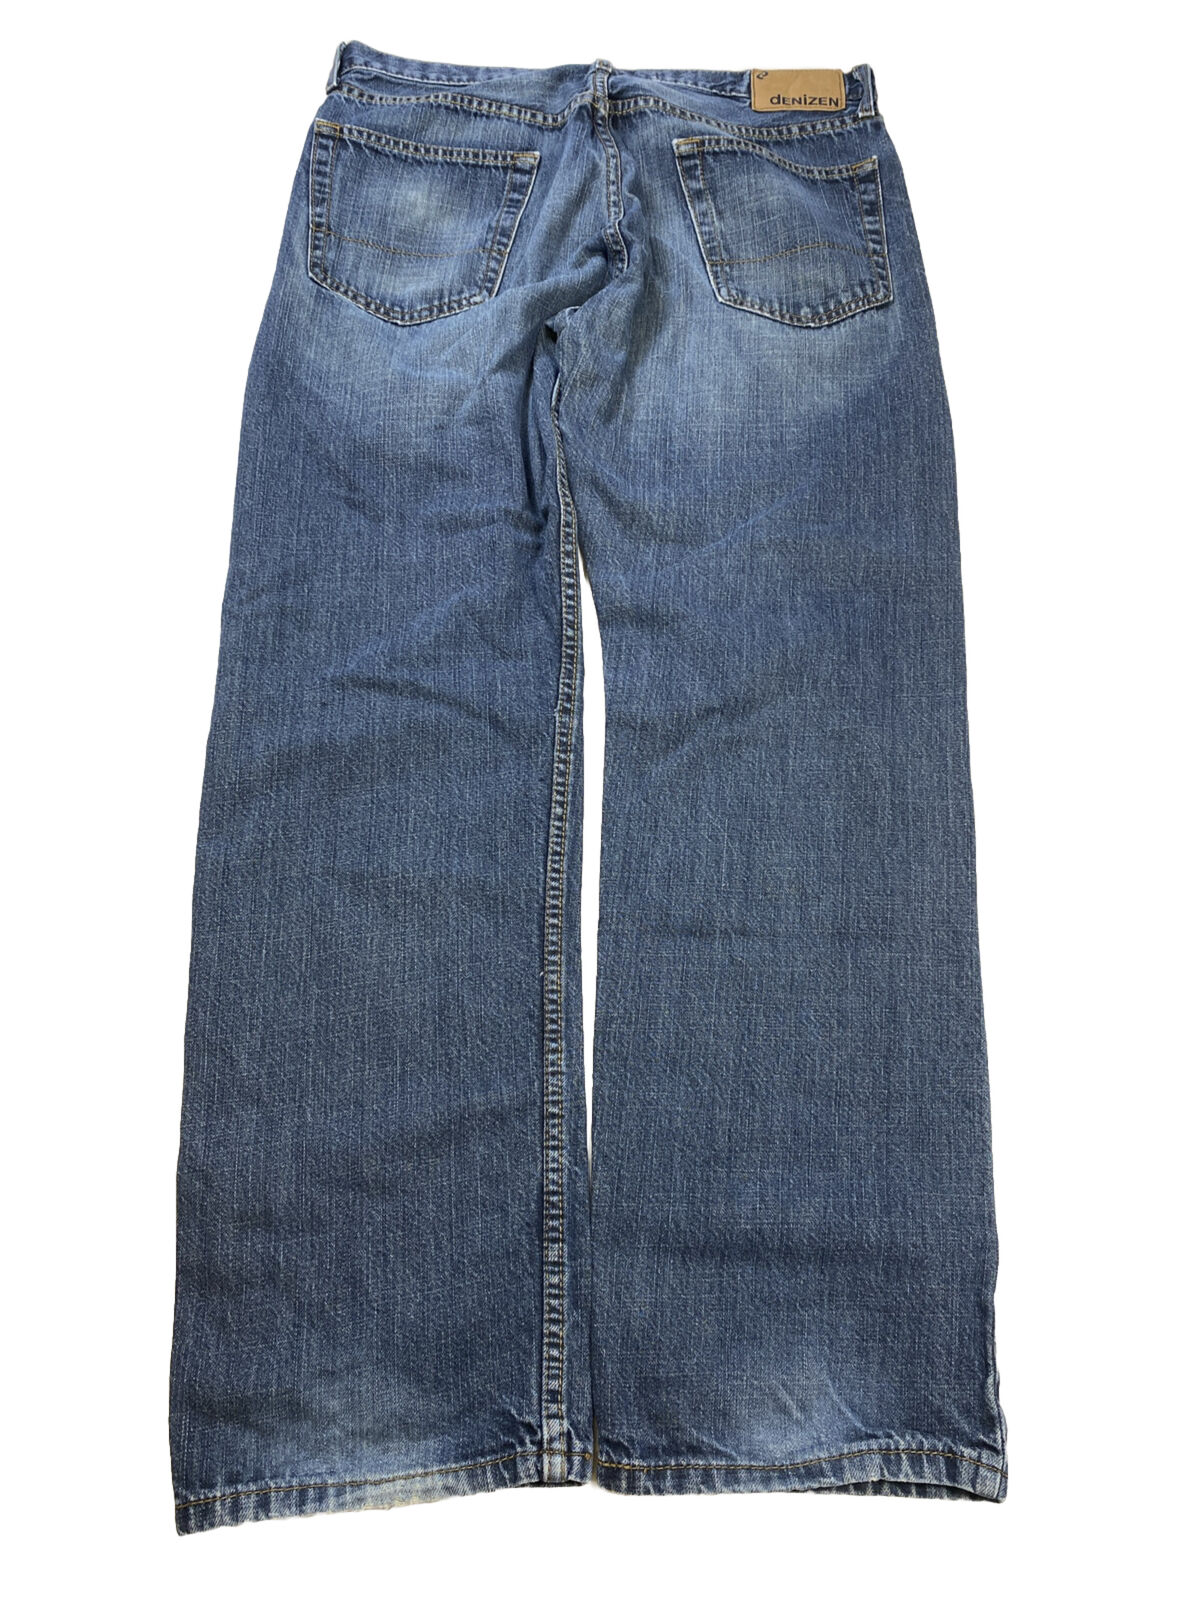 Denizen Jeans de pierna recta con lavado oscuro 236 para hombre - 36x32